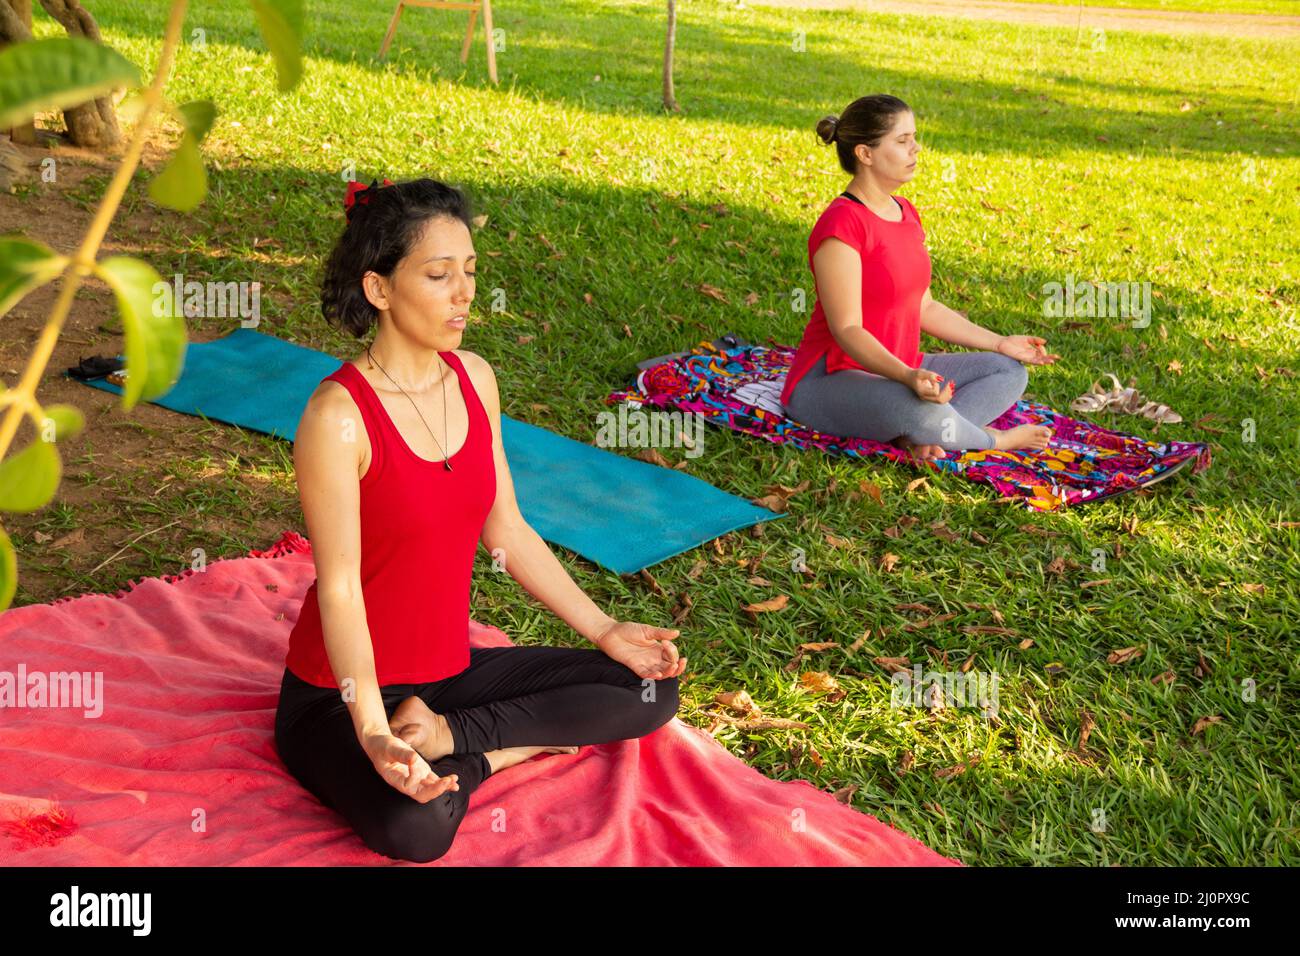 Goias, Brésil – 11 mars 2022 : cours de yoga dans un parc public de la ville. Deux personnes pratiquant le yoga dans un parc herbacé bordé d'arbres. Banque D'Images